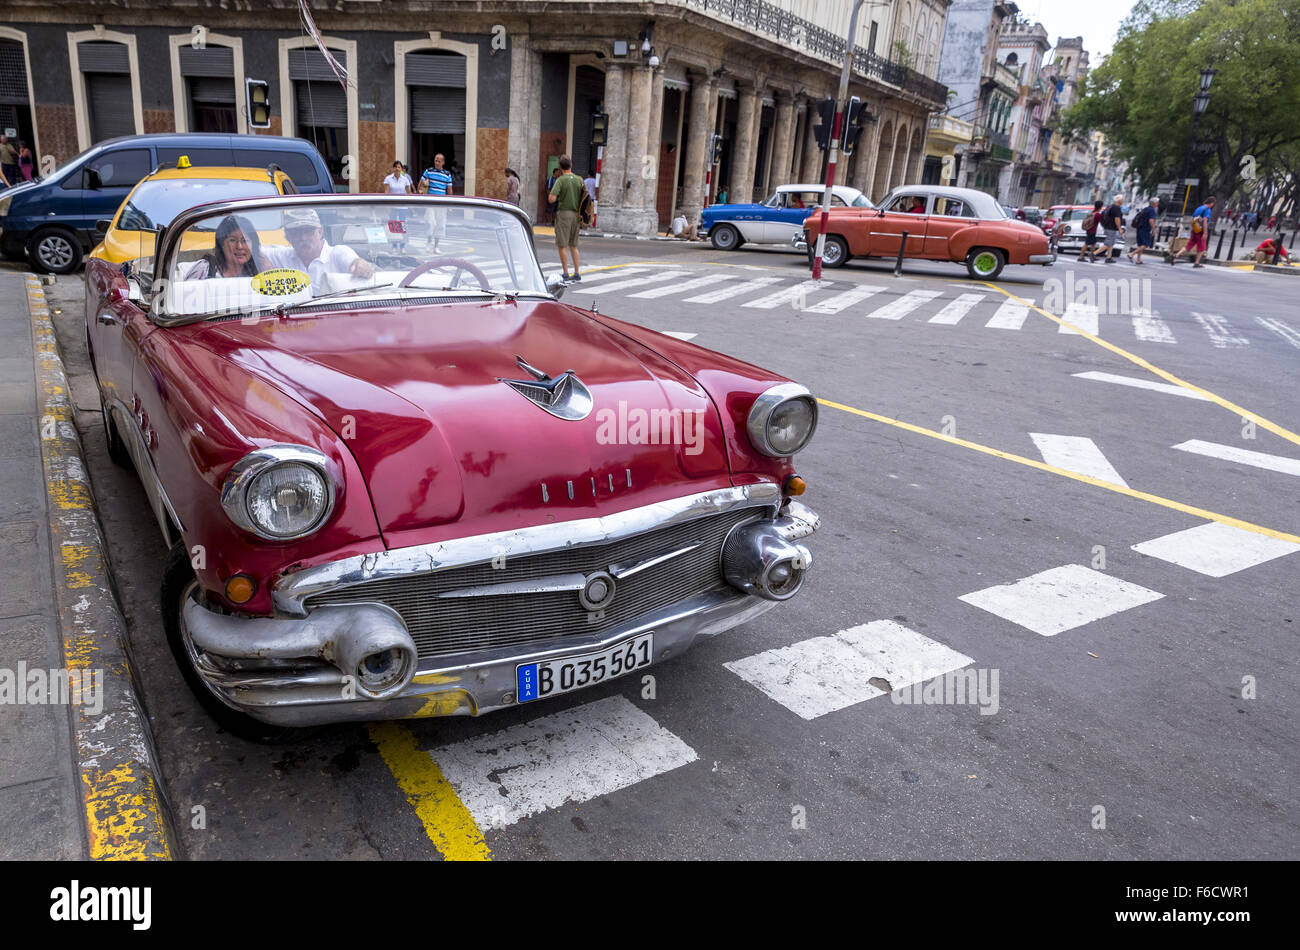 Deux touristes assis dans une vieille décapotable en attente d'une sightseeingtour dans le vieux Havane, vieille voiture, voiture vintage rouge sur le stree Banque D'Images